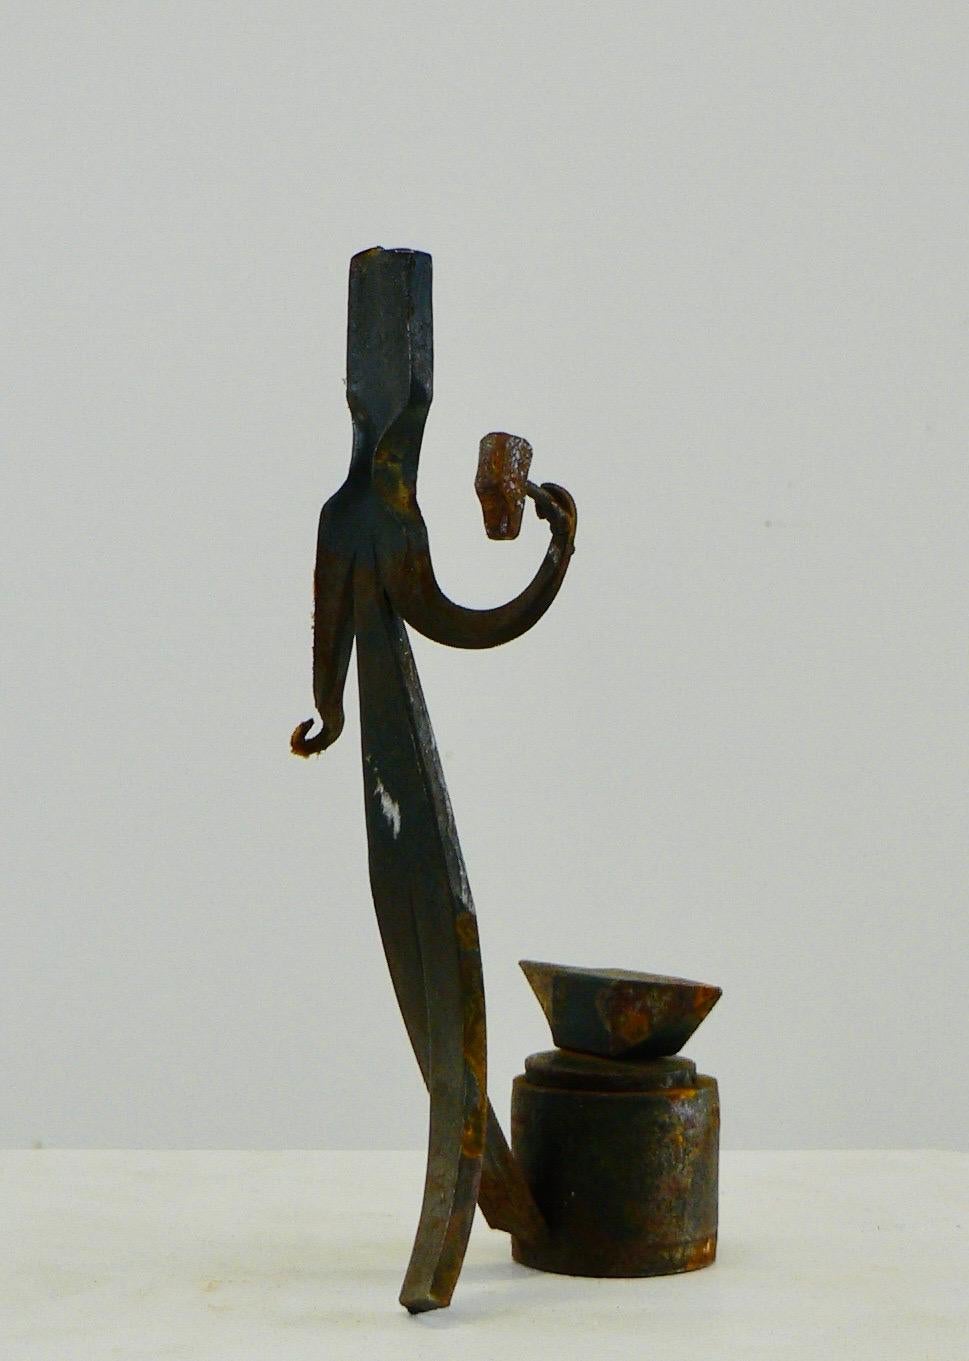 Une œuvre d'art populaire français des années 1960 représentant un forgeron à son enclume, frappant le métal avec son marteau. Superbe charpente métallique primitive.